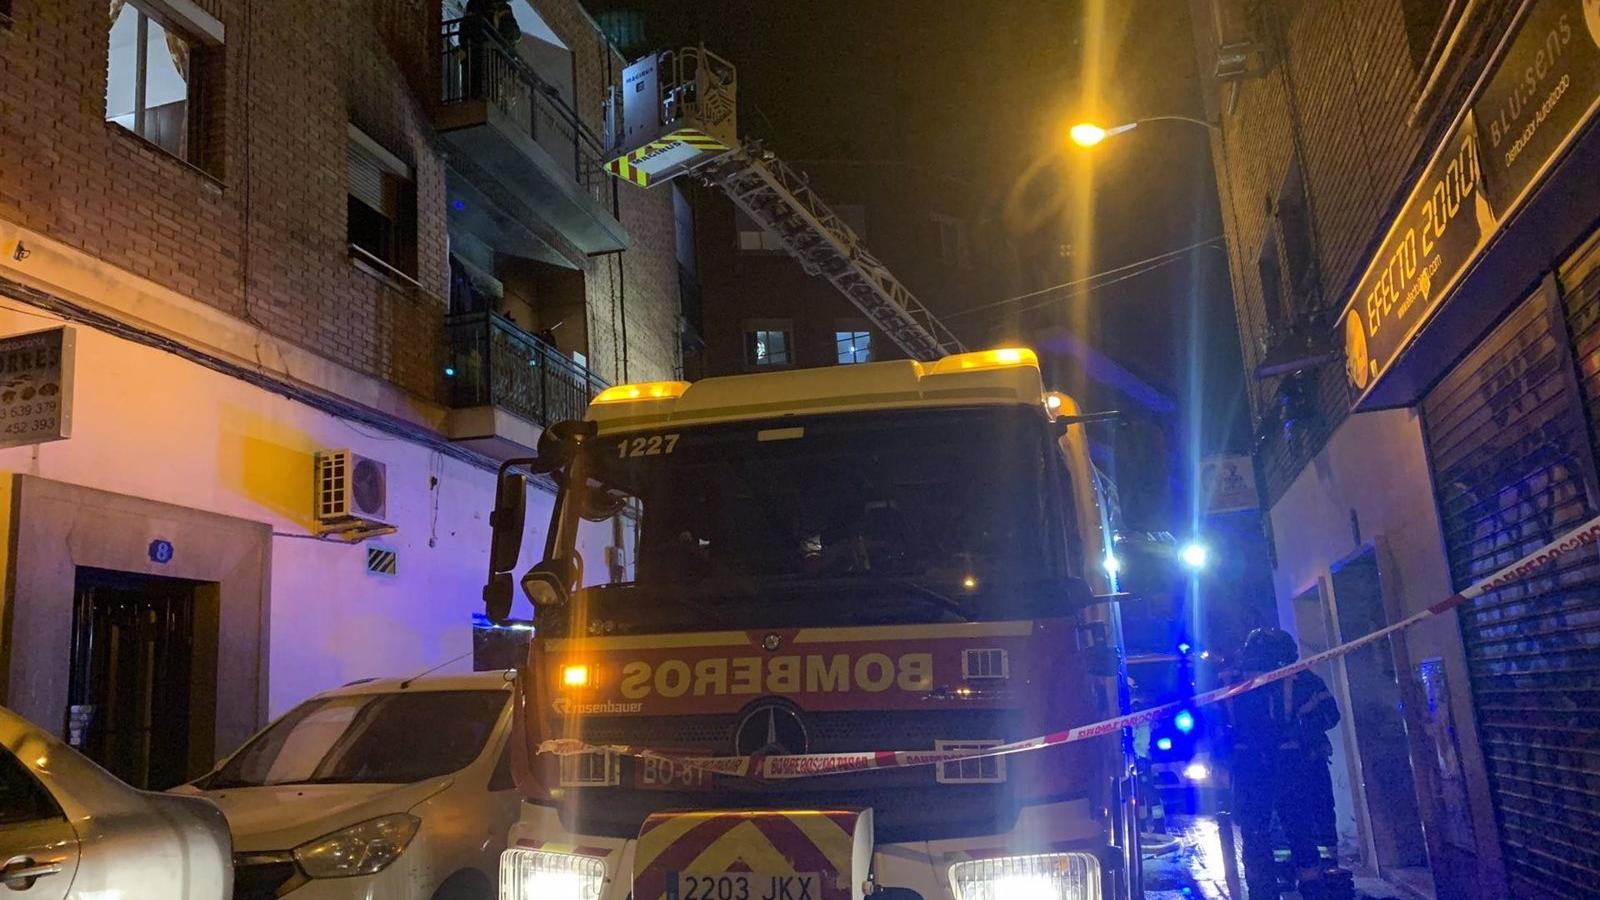  Extinguido un fuego sin heridos en una vivienda en Puente de Vallecas